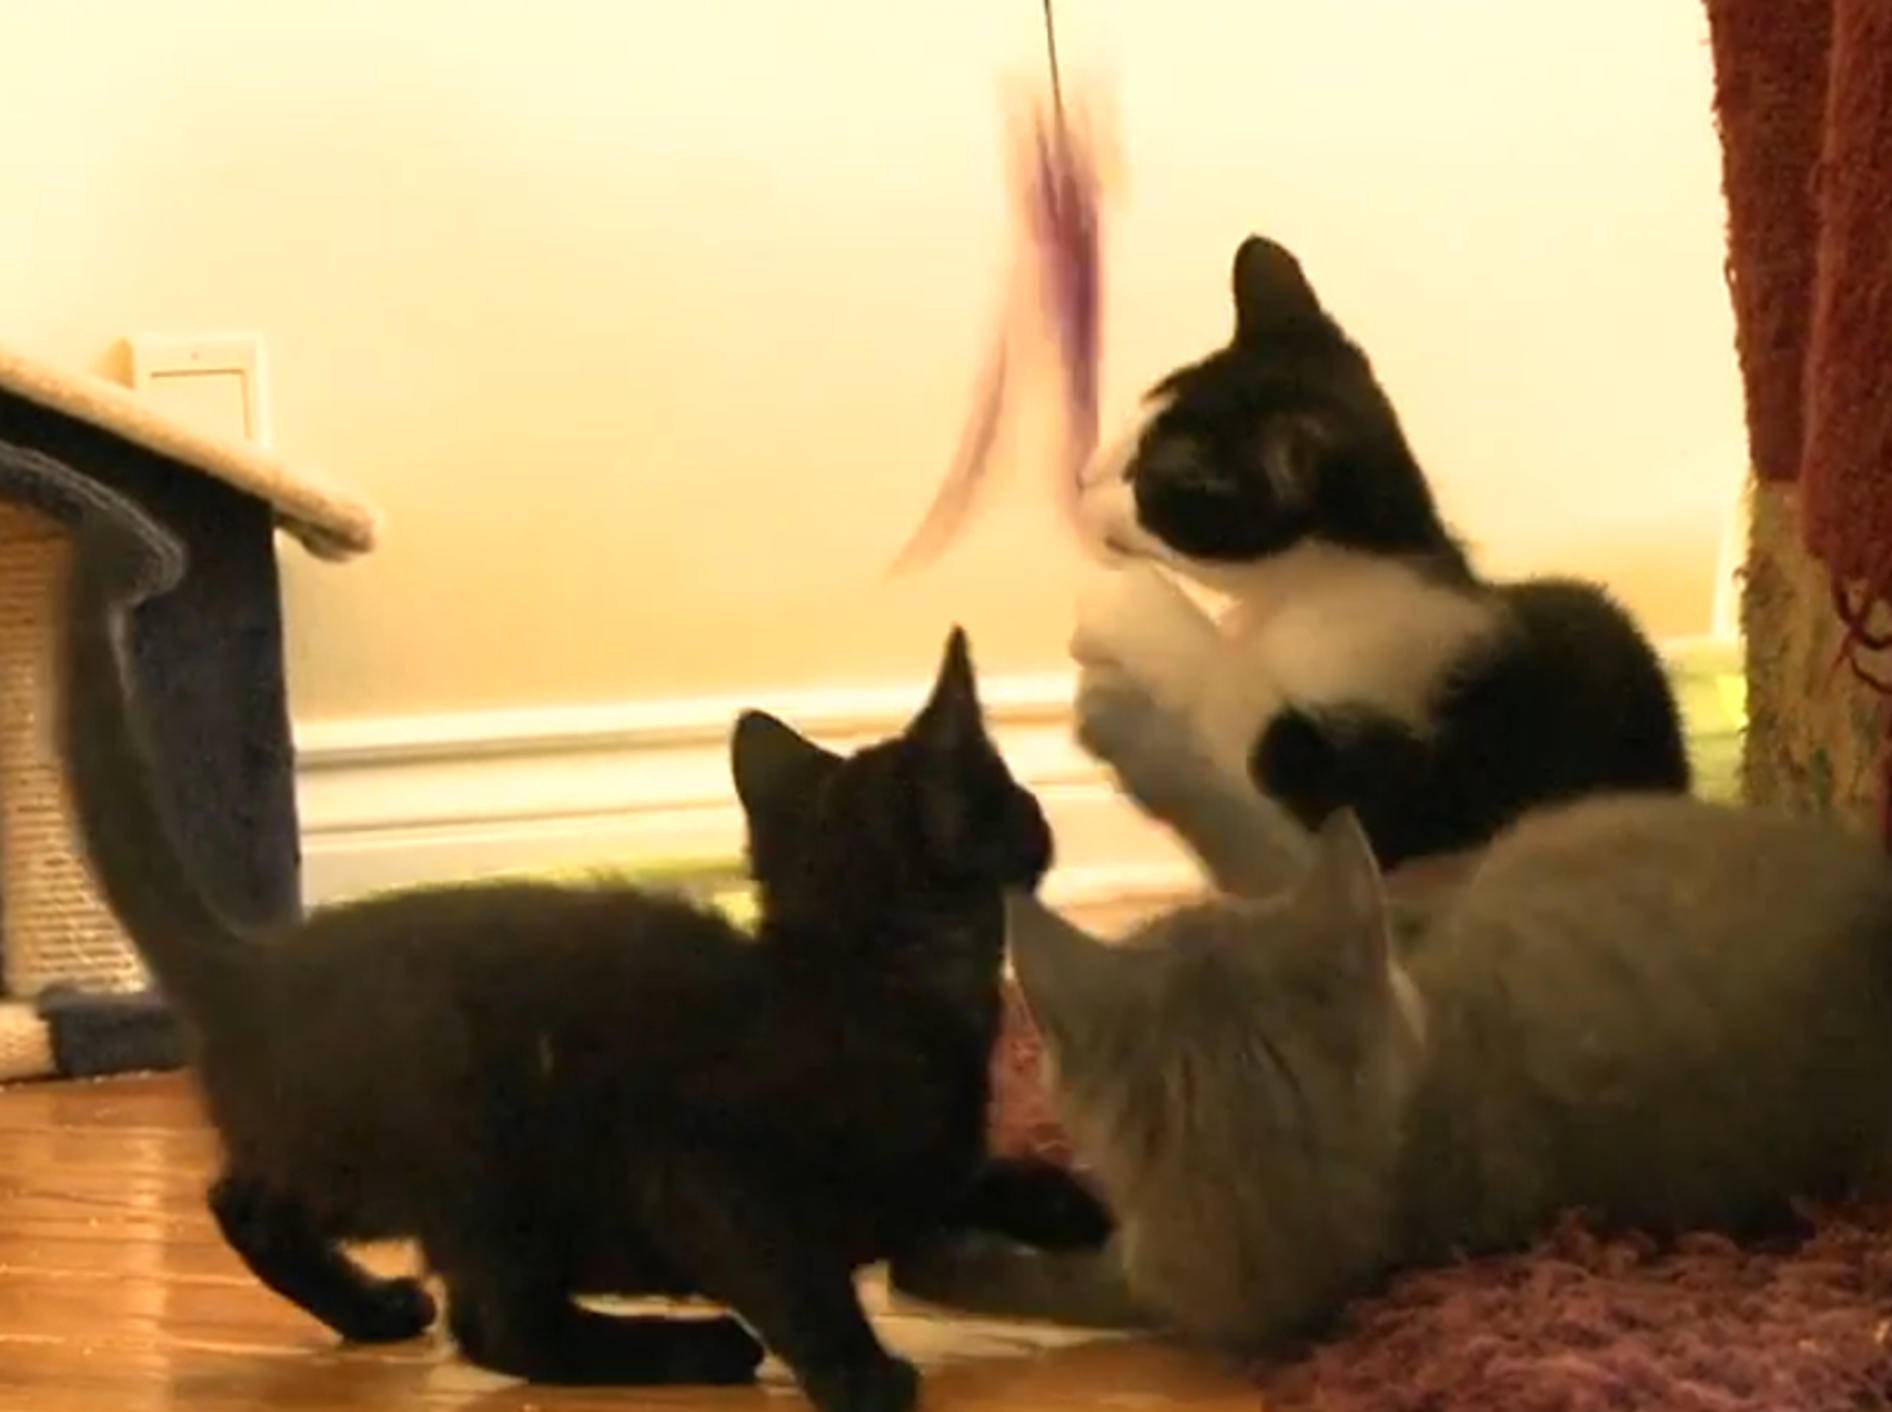 Süße Kätzchen: "Federwedel sind toll!" – Bild: YouTube / The Pet Collective